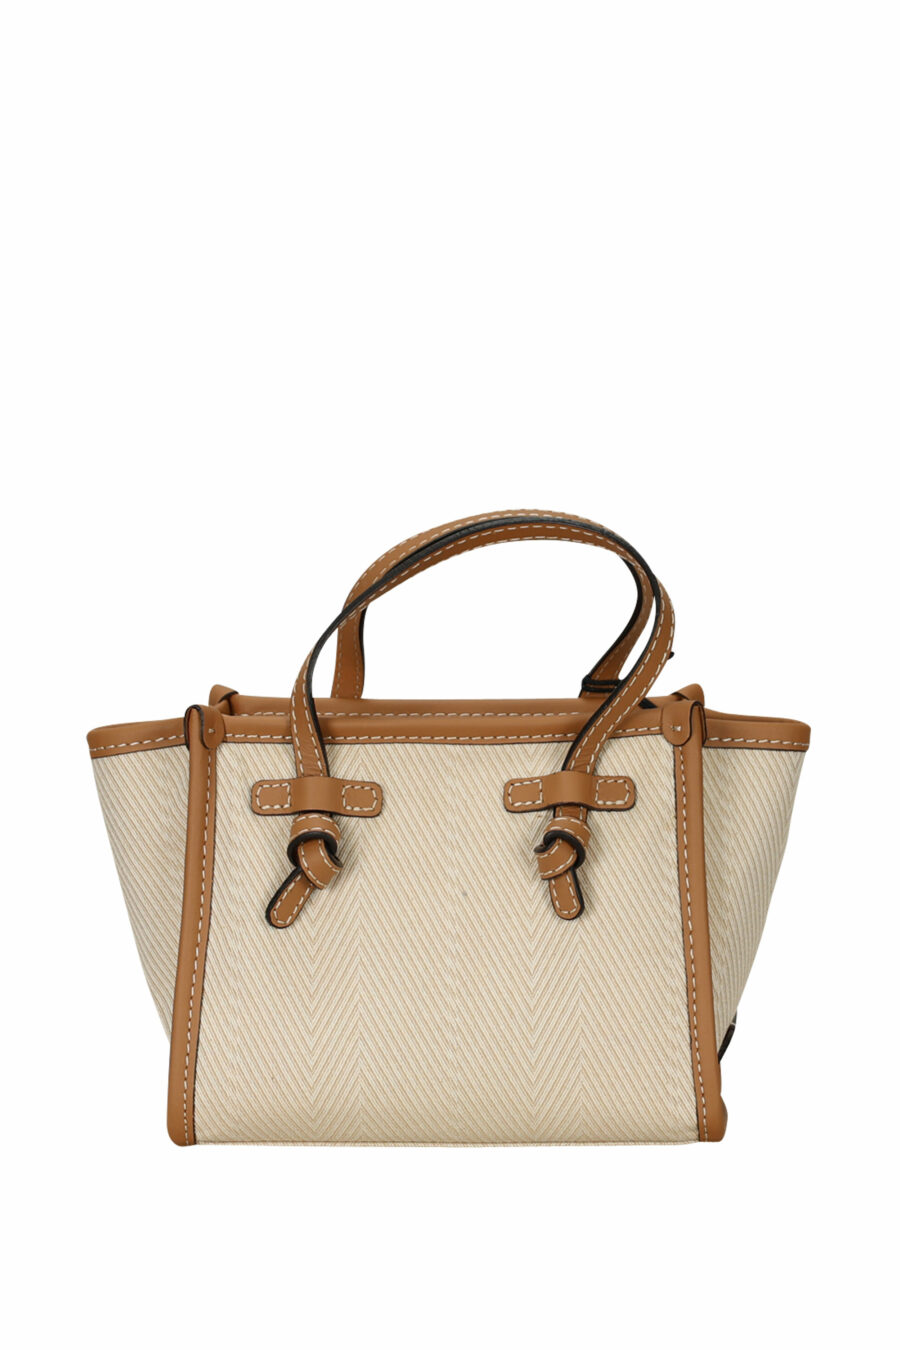 Mini Shopper Tasche "Miss Marcella" beige mit braun und Minilogo - 8057145894386